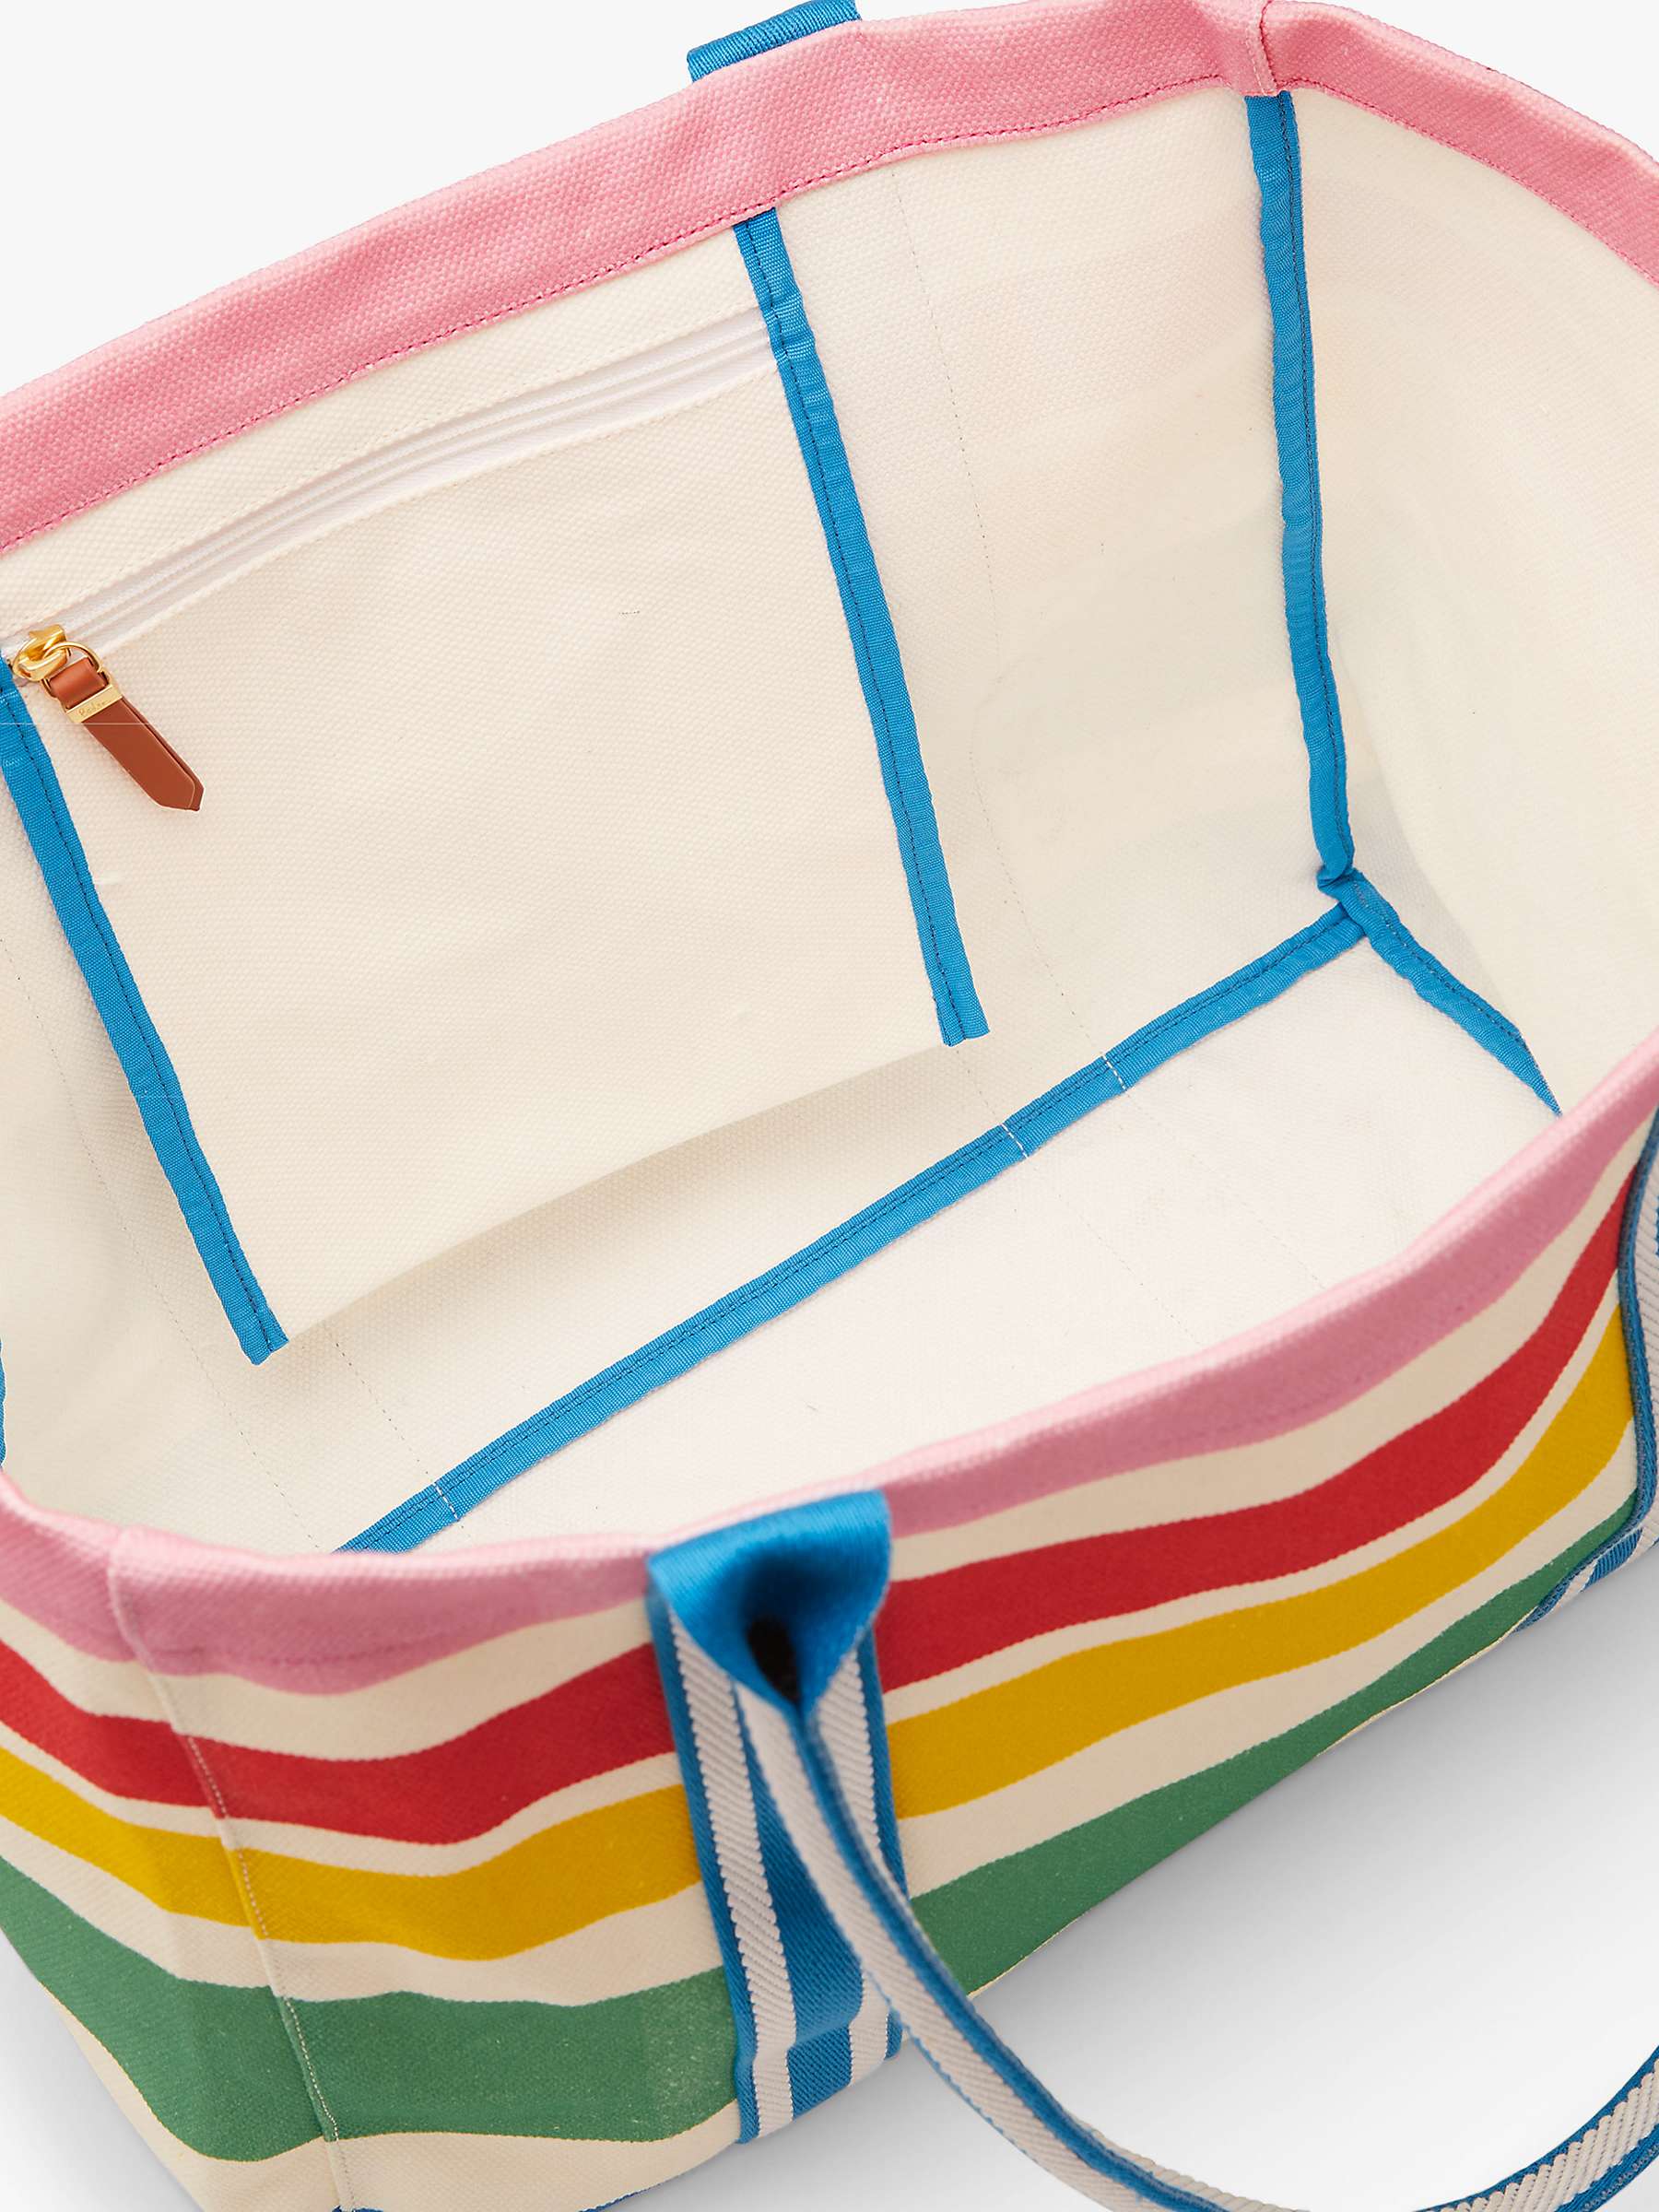 Buy Boden Olivia Striped Tote Bag, Summer Online at johnlewis.com